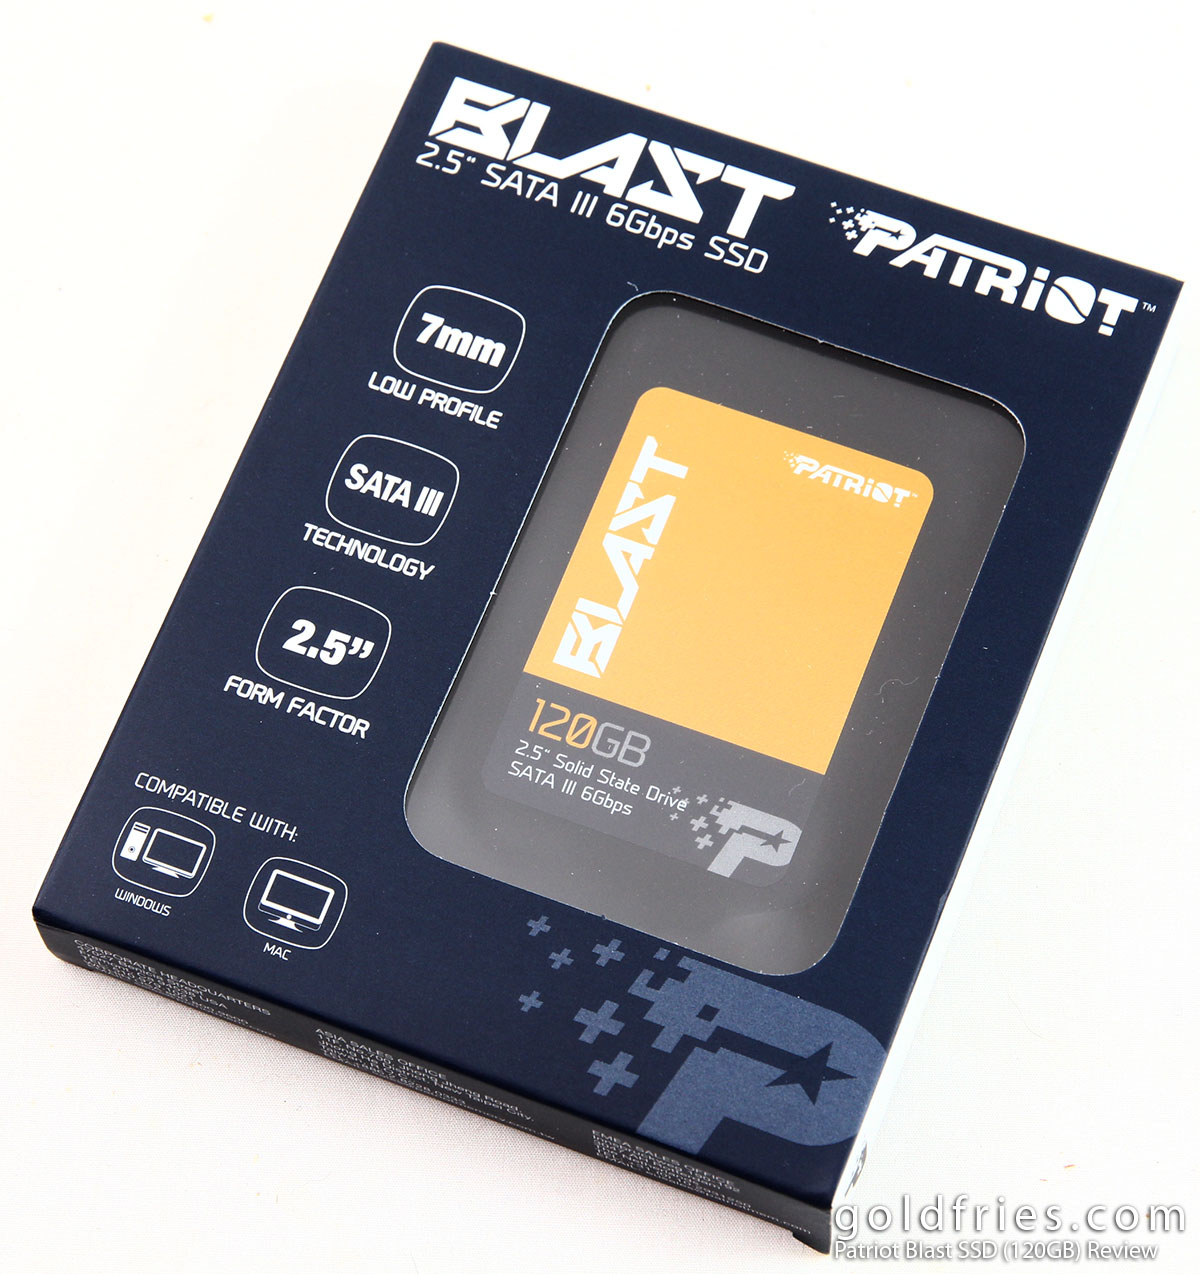 Patriot Blast SSD (120GB) Review ~ goldfries